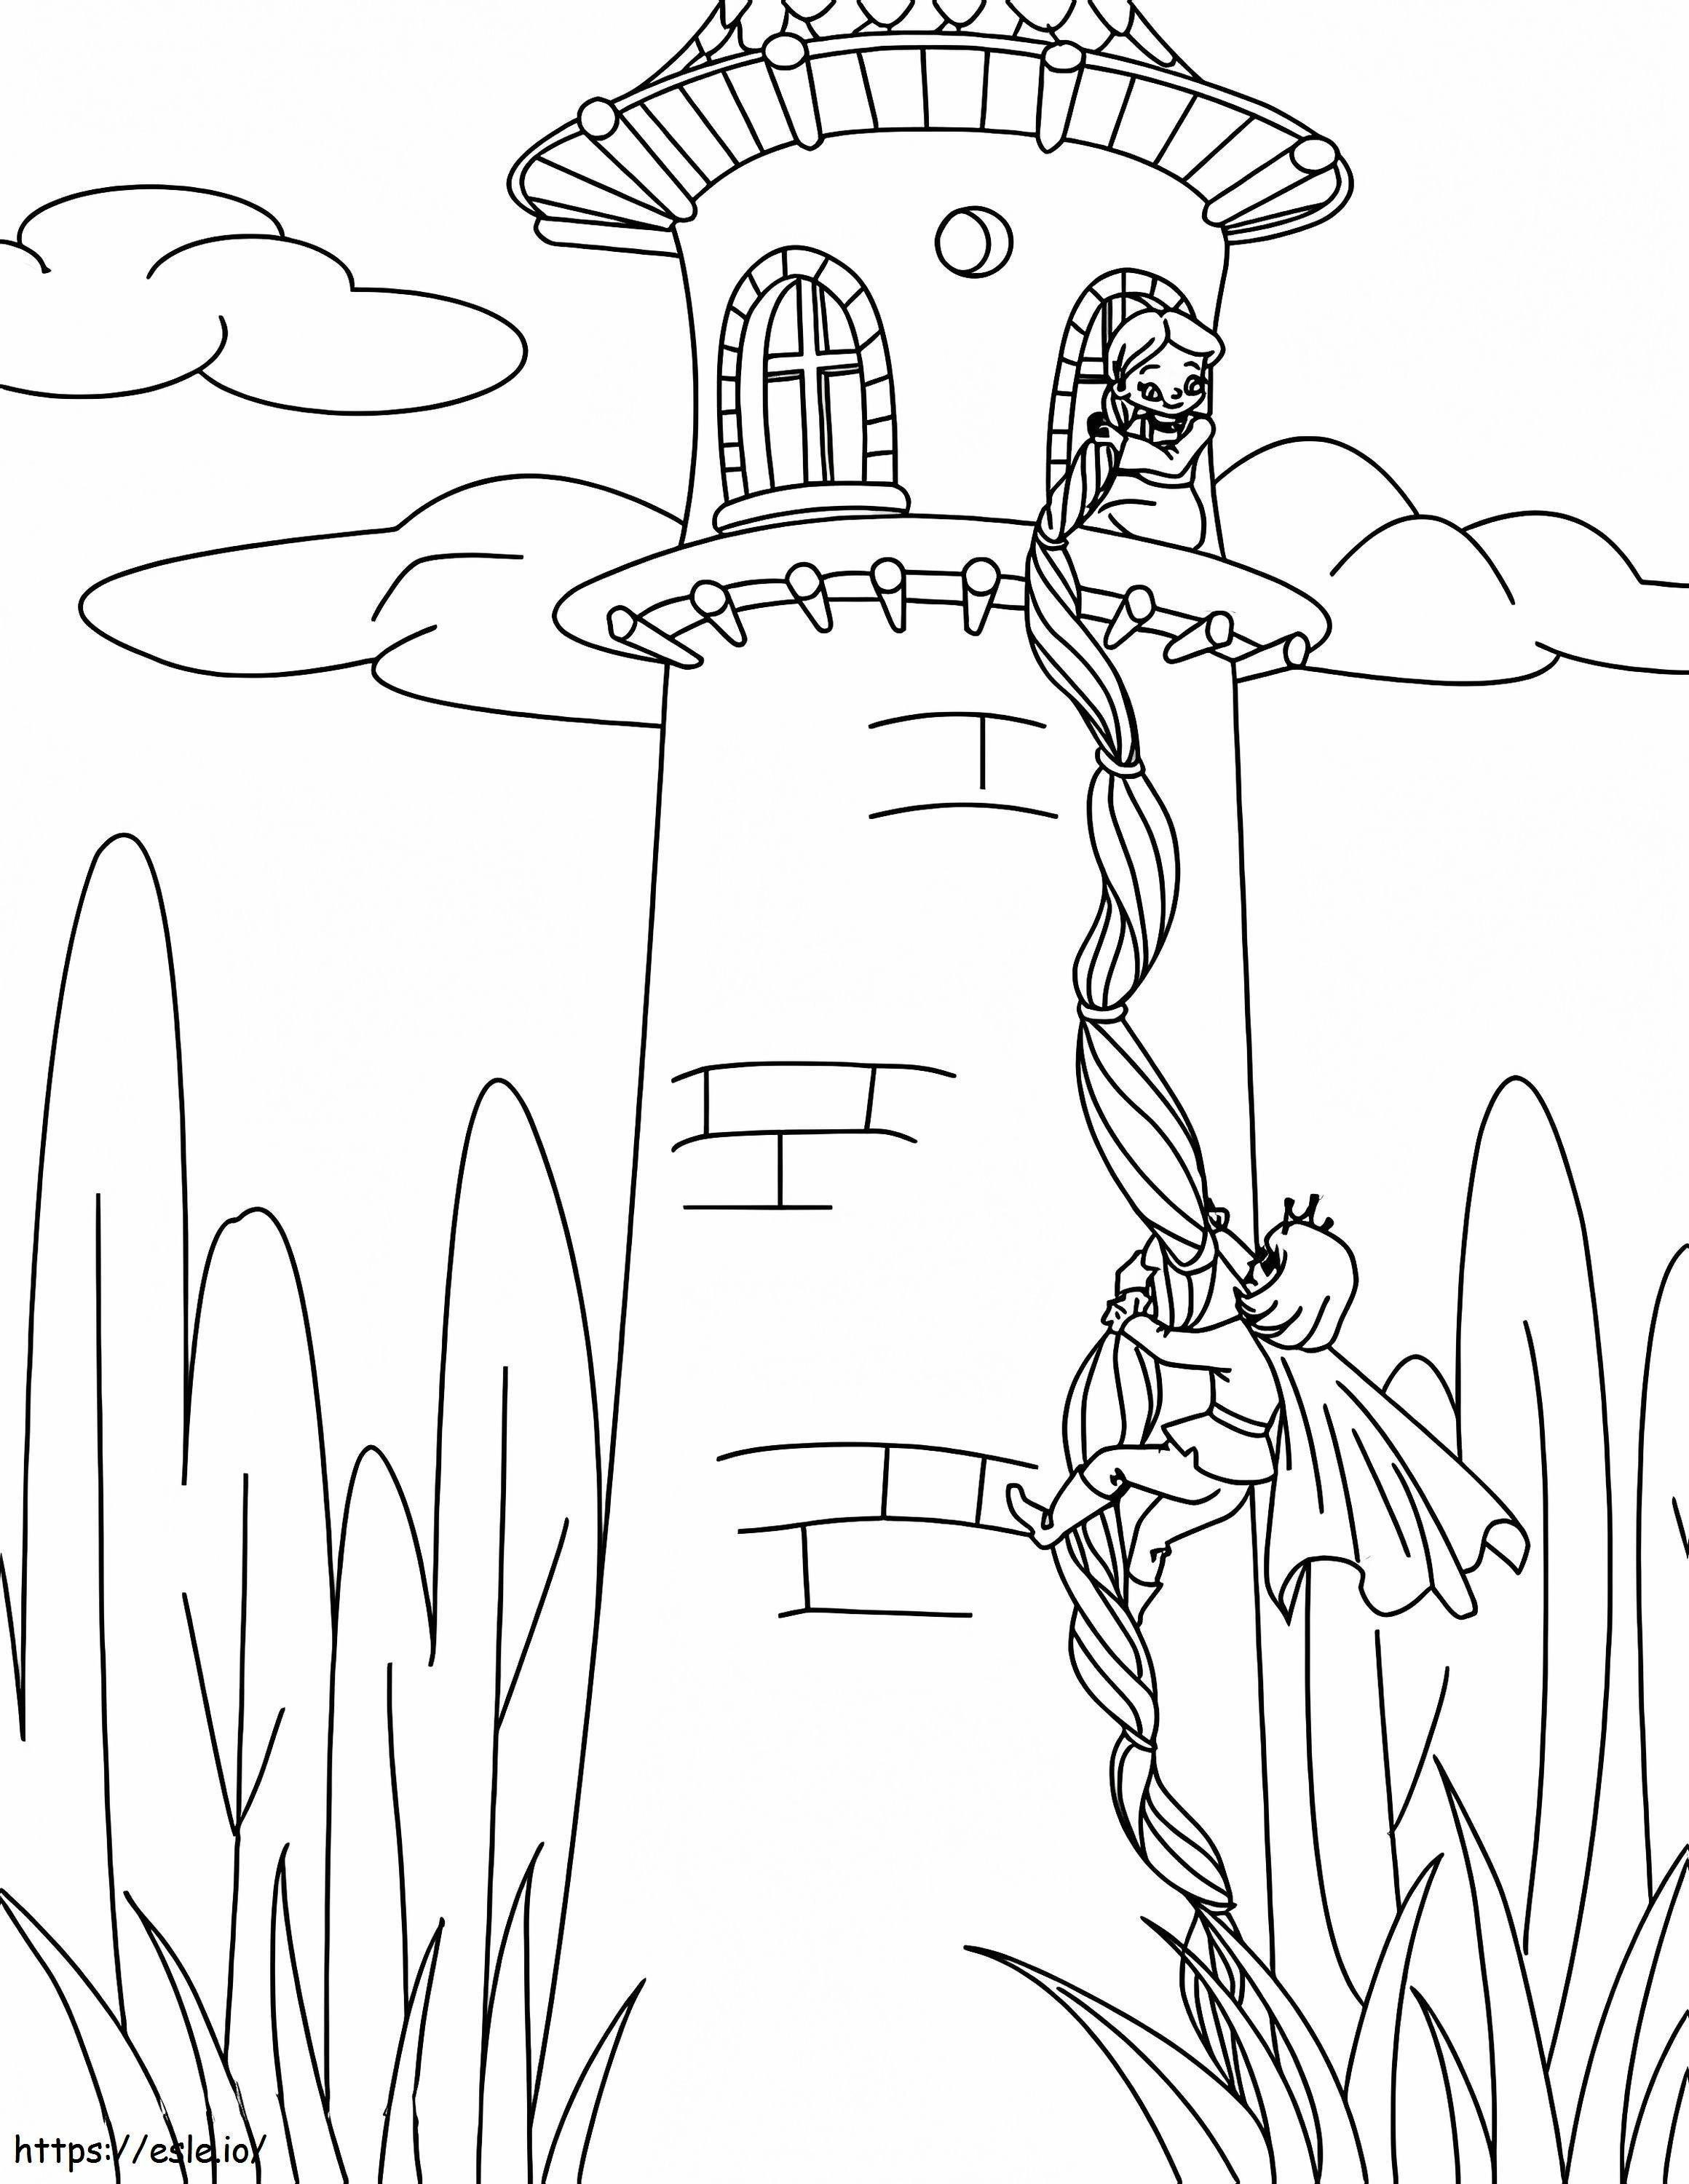 Rapunzel nella torre da colorare